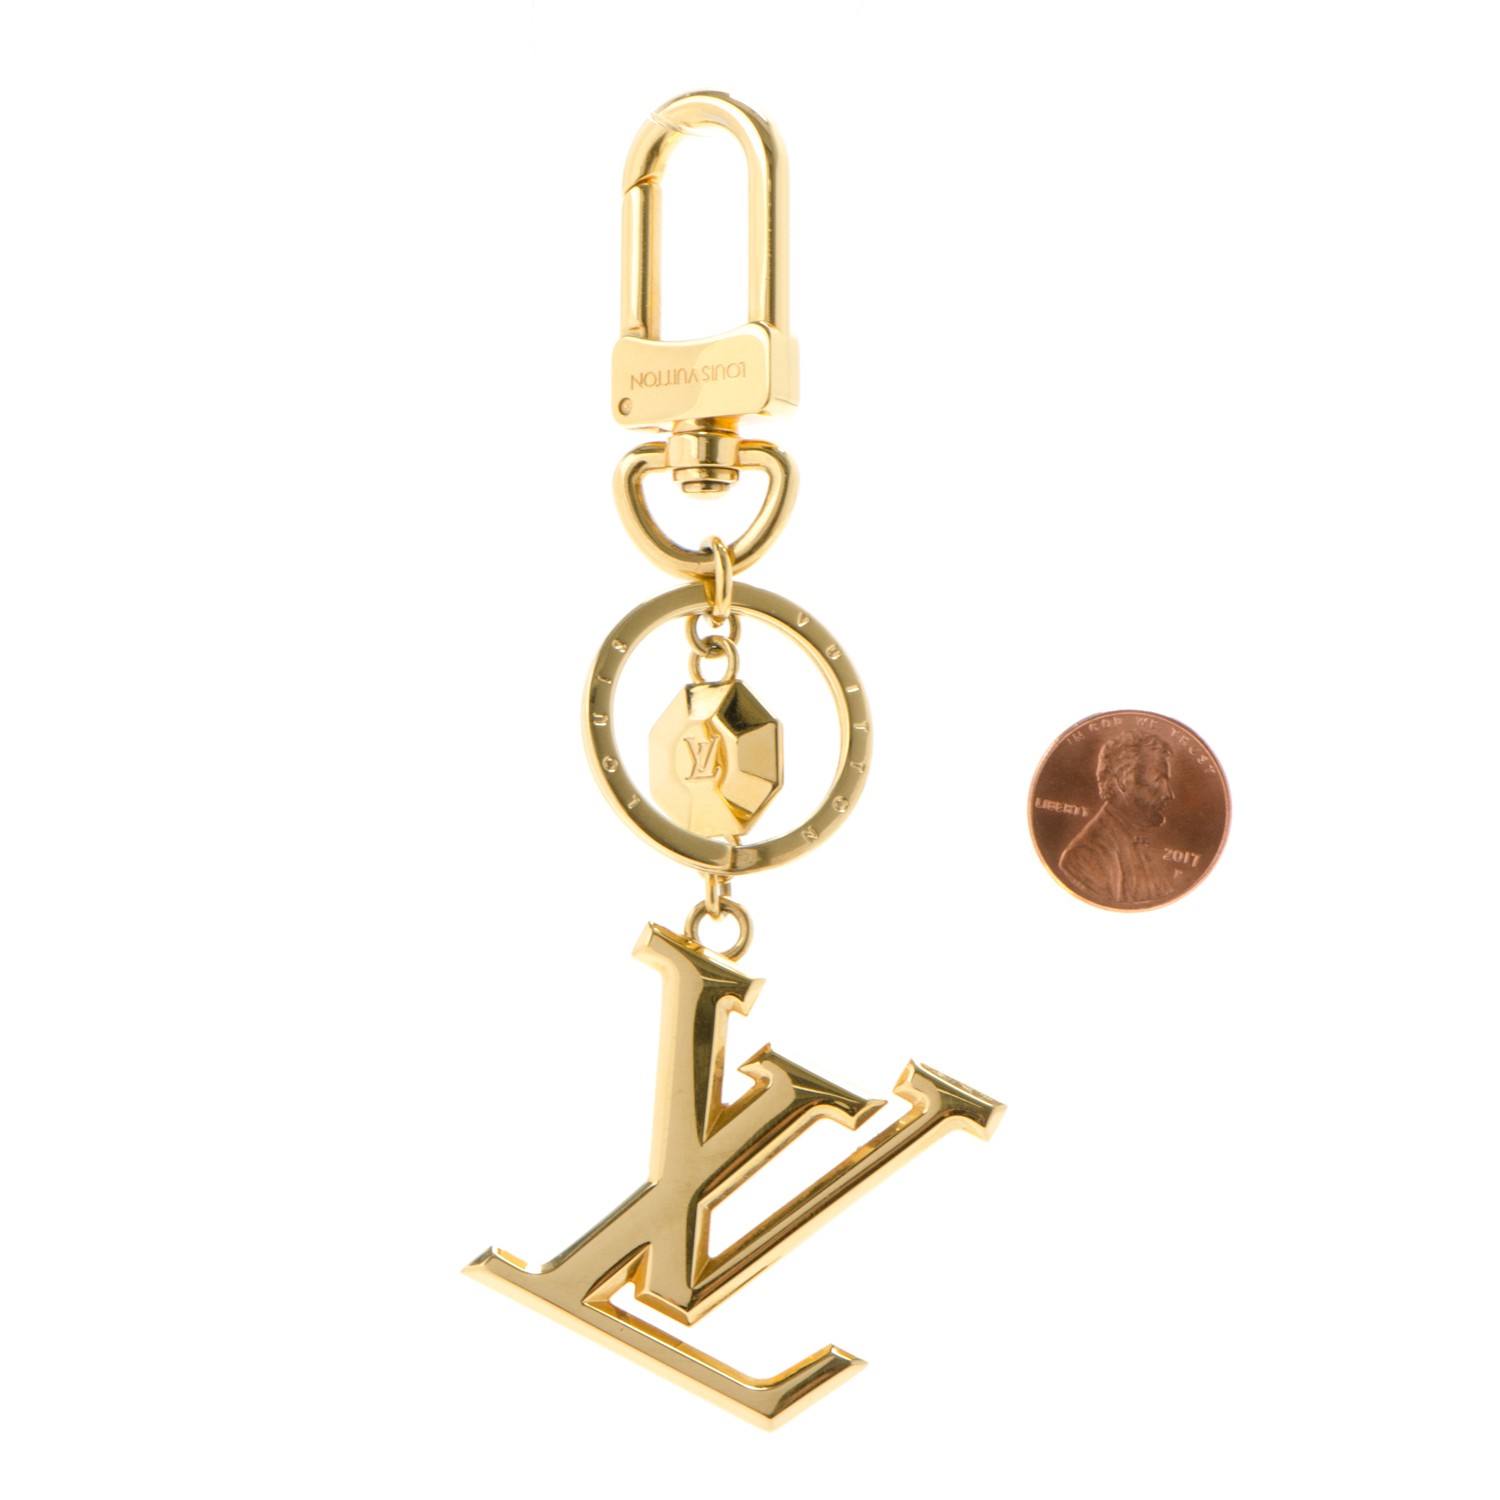 Shop Louis Vuitton Lv facettes bag charm & key holder (M65216) by